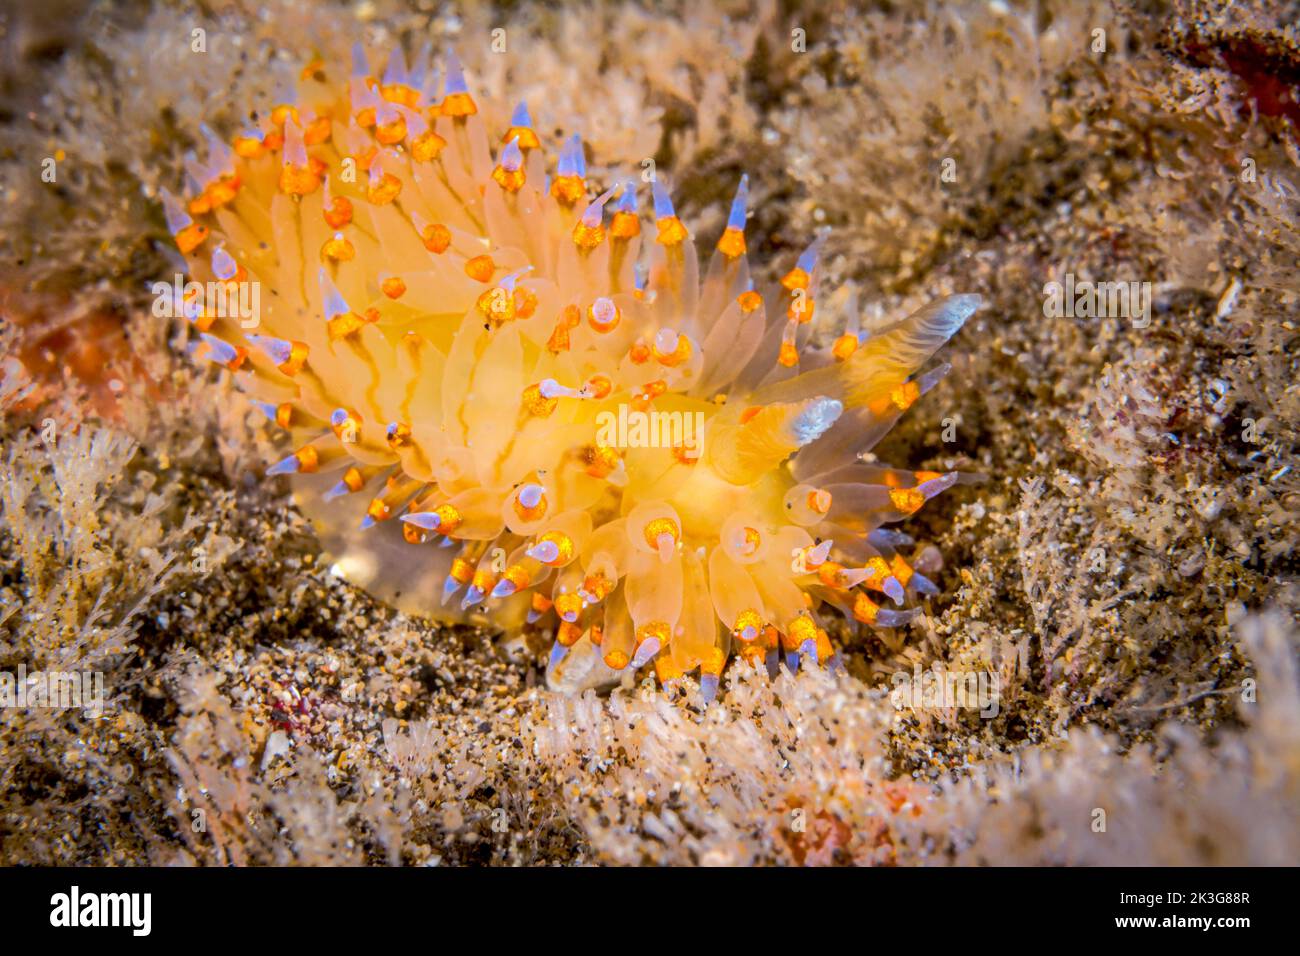 Un piccolo nudibranco giallastro di janolus con punte di aneto blu, che striscia attraverso una barriera corallina in cerca di cibo come caccia gli idroidi. Foto Stock